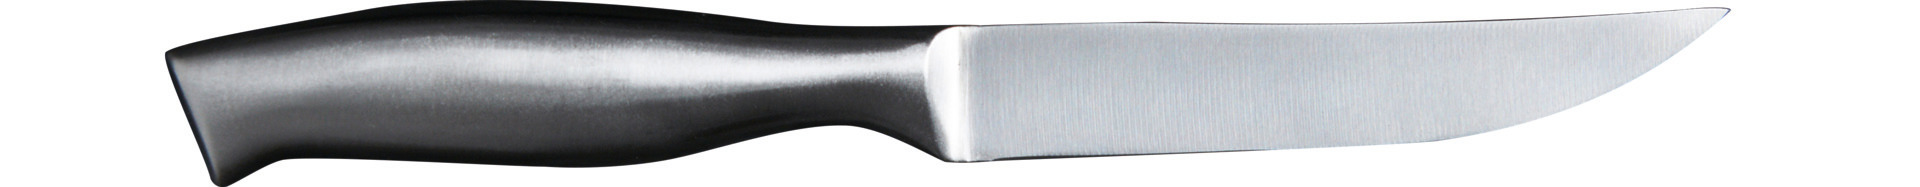 Steakmesser 240 mm geschliffene Klinge Metallgriff